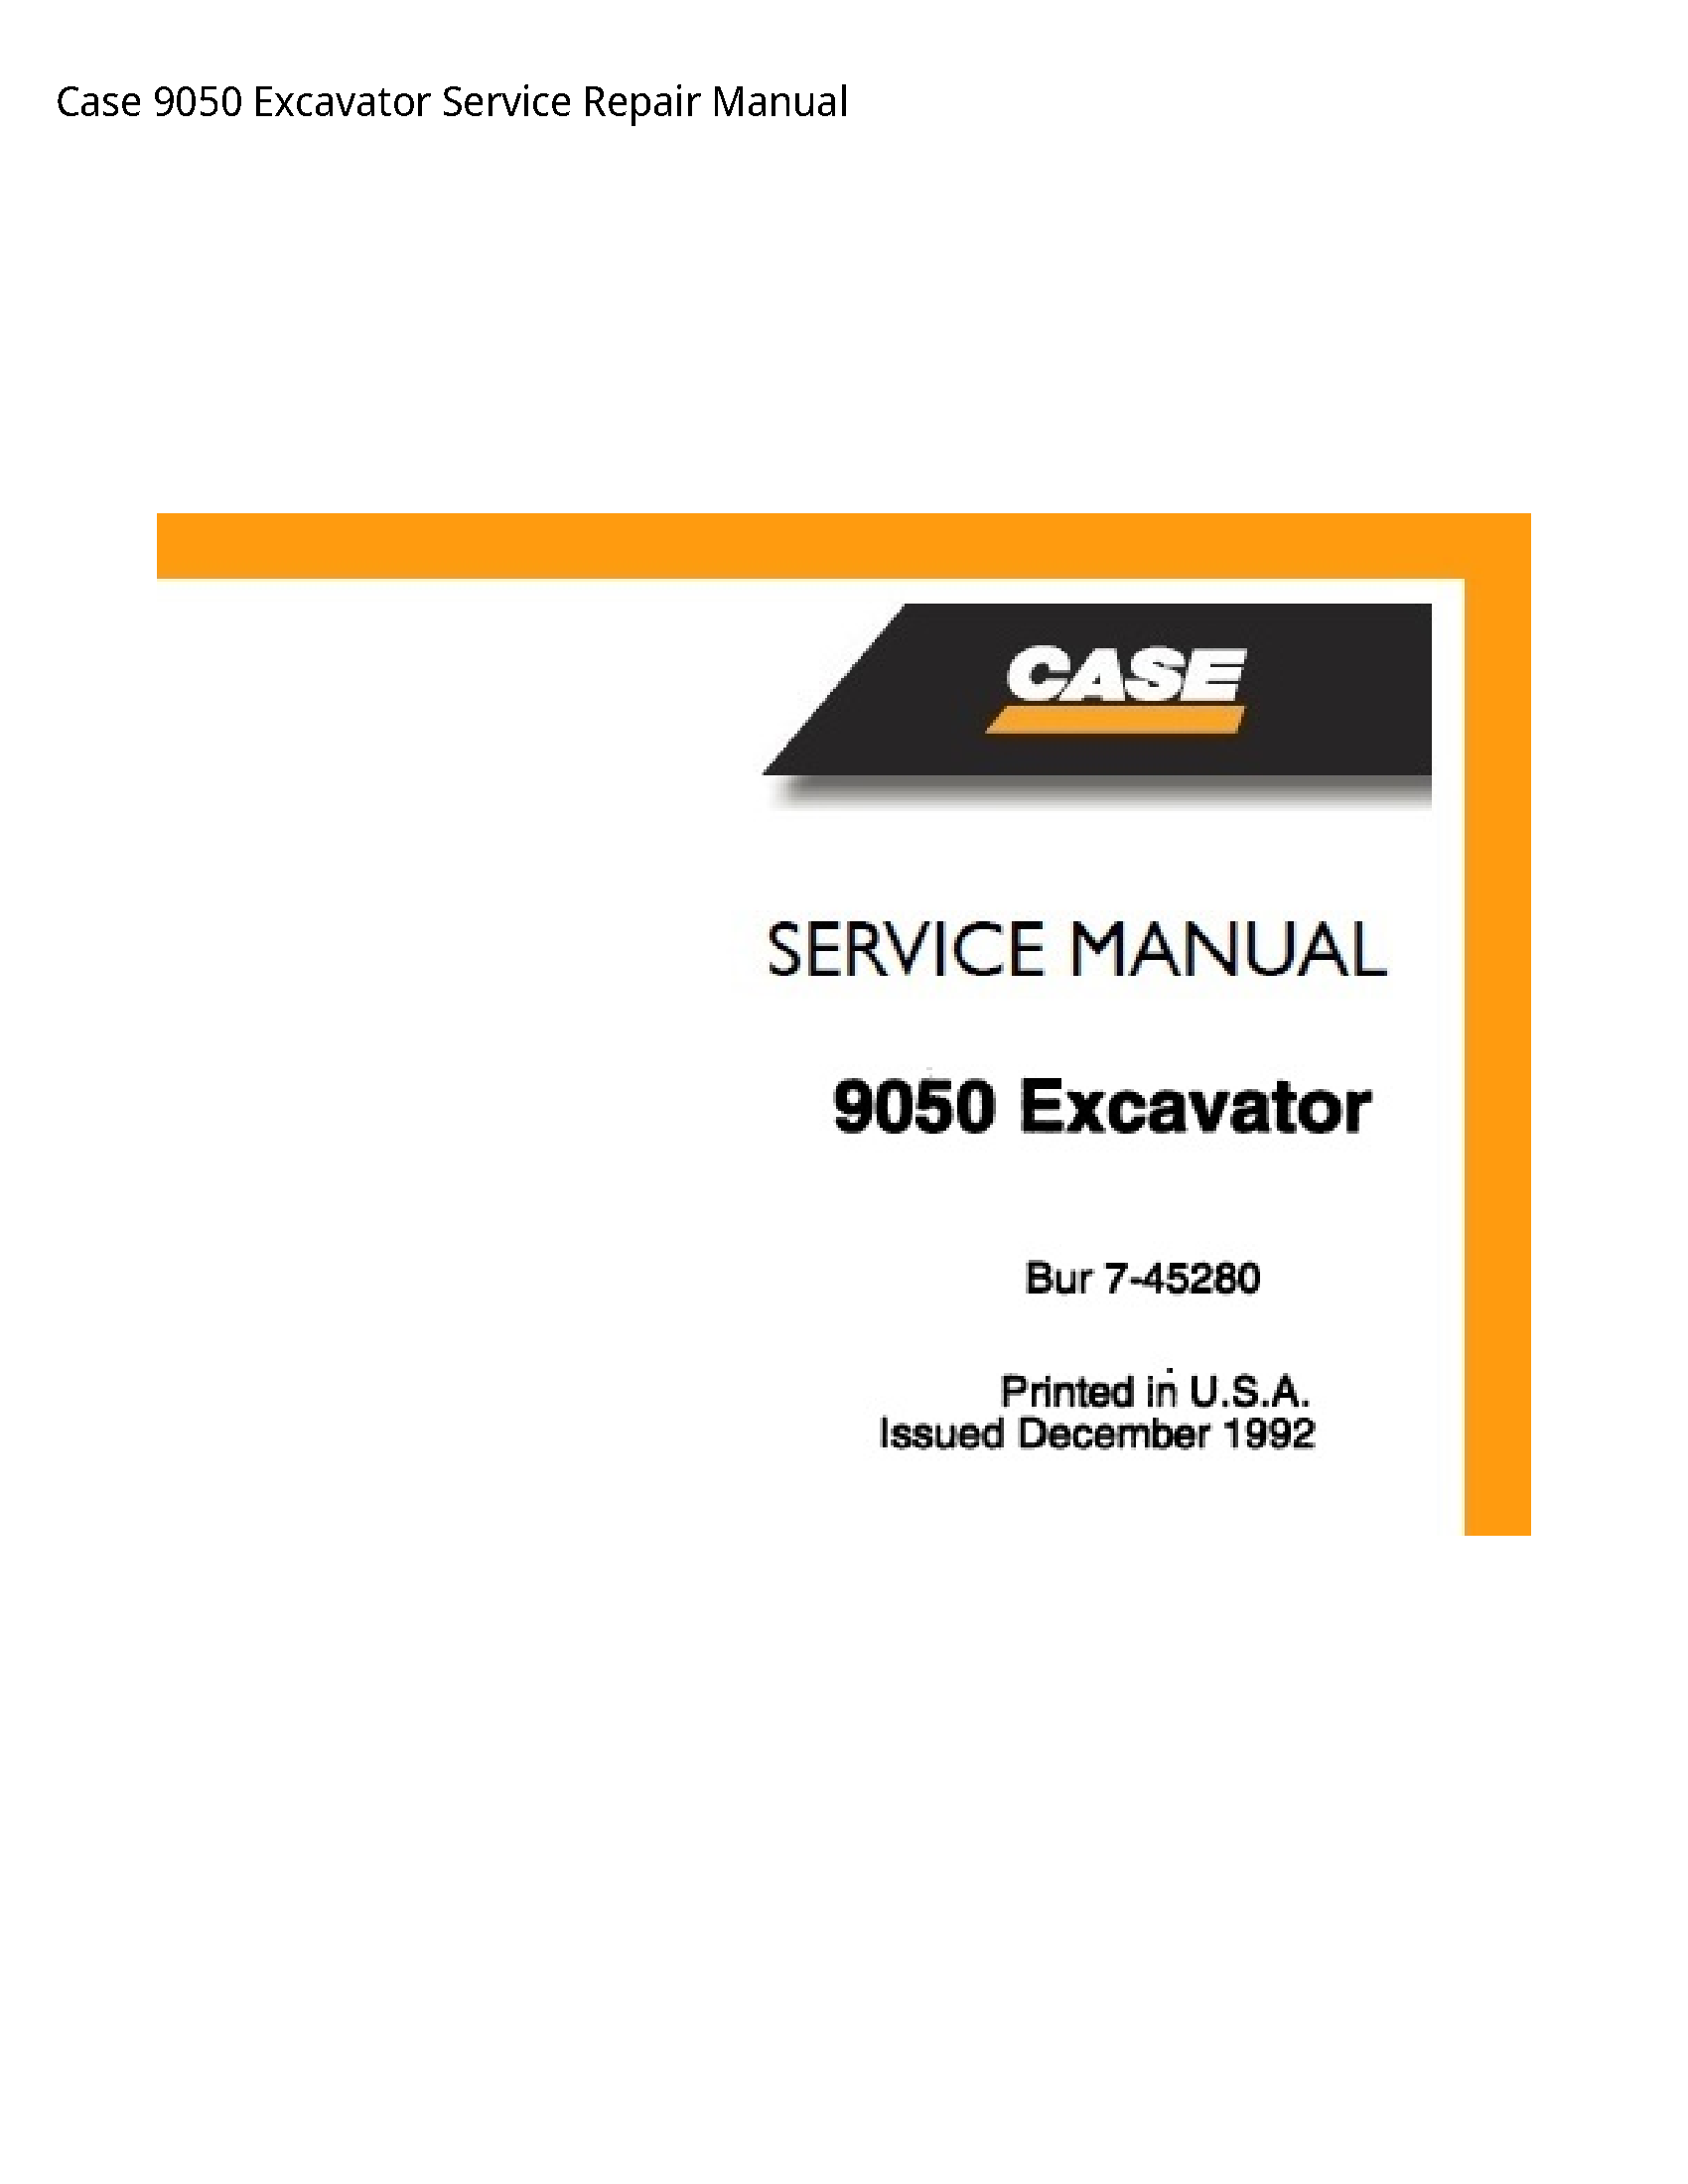 Case/Case IH 9050 Excavator manual